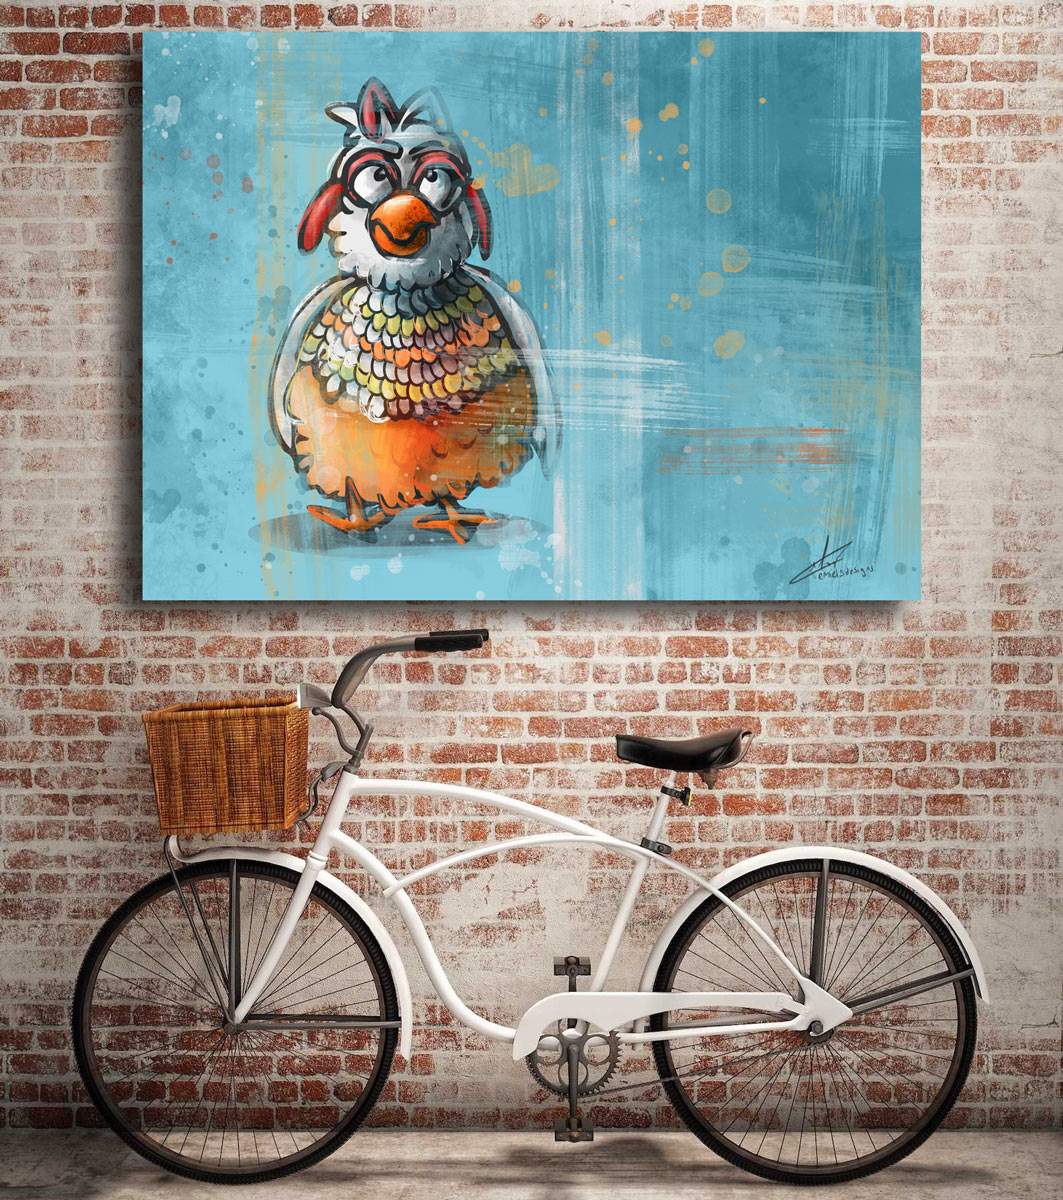 grumpy chicken digital artwork